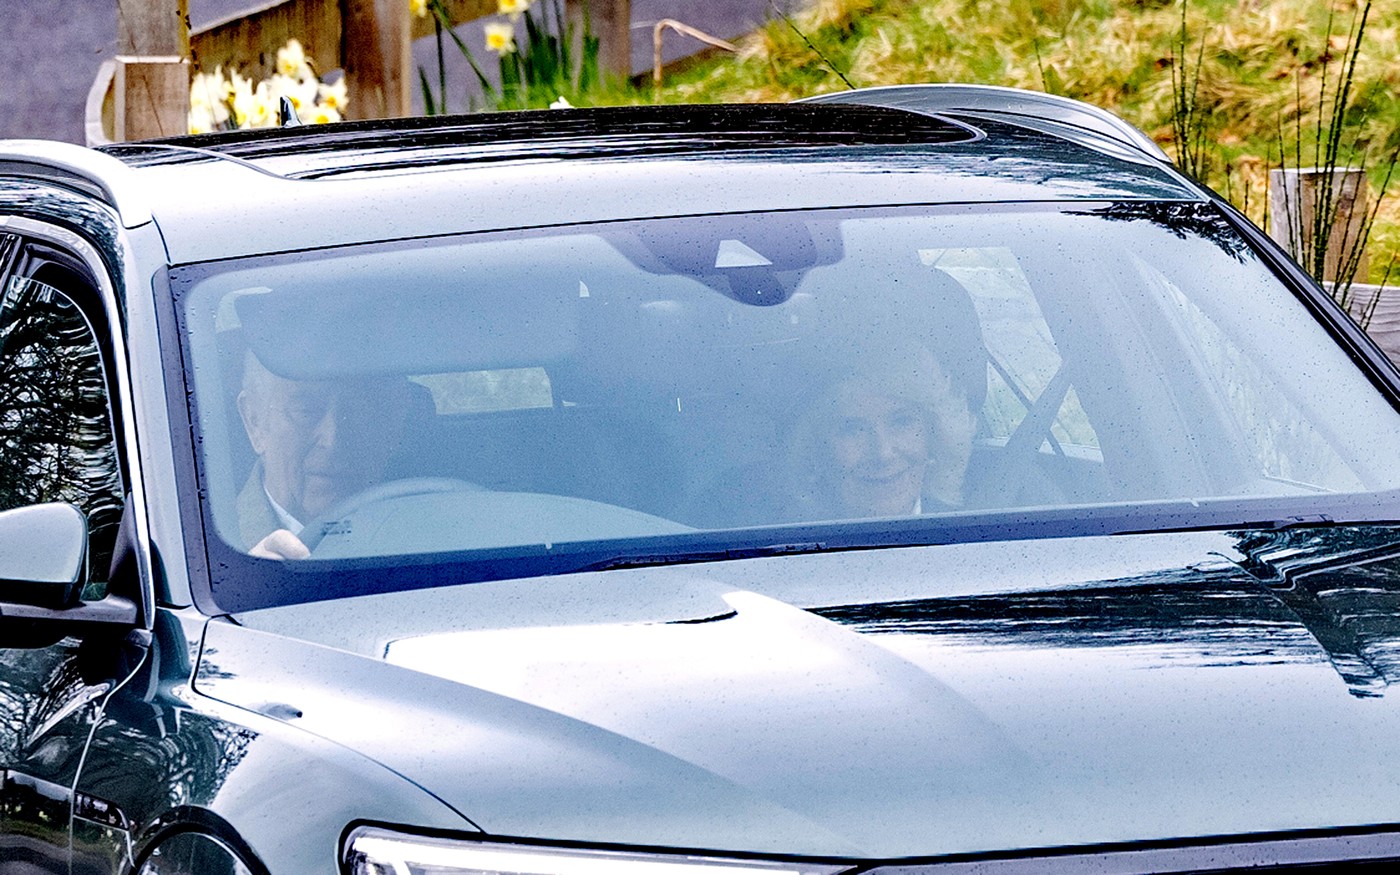 Regele Charles și Regina Camilla, într-o mașină, în Scoția